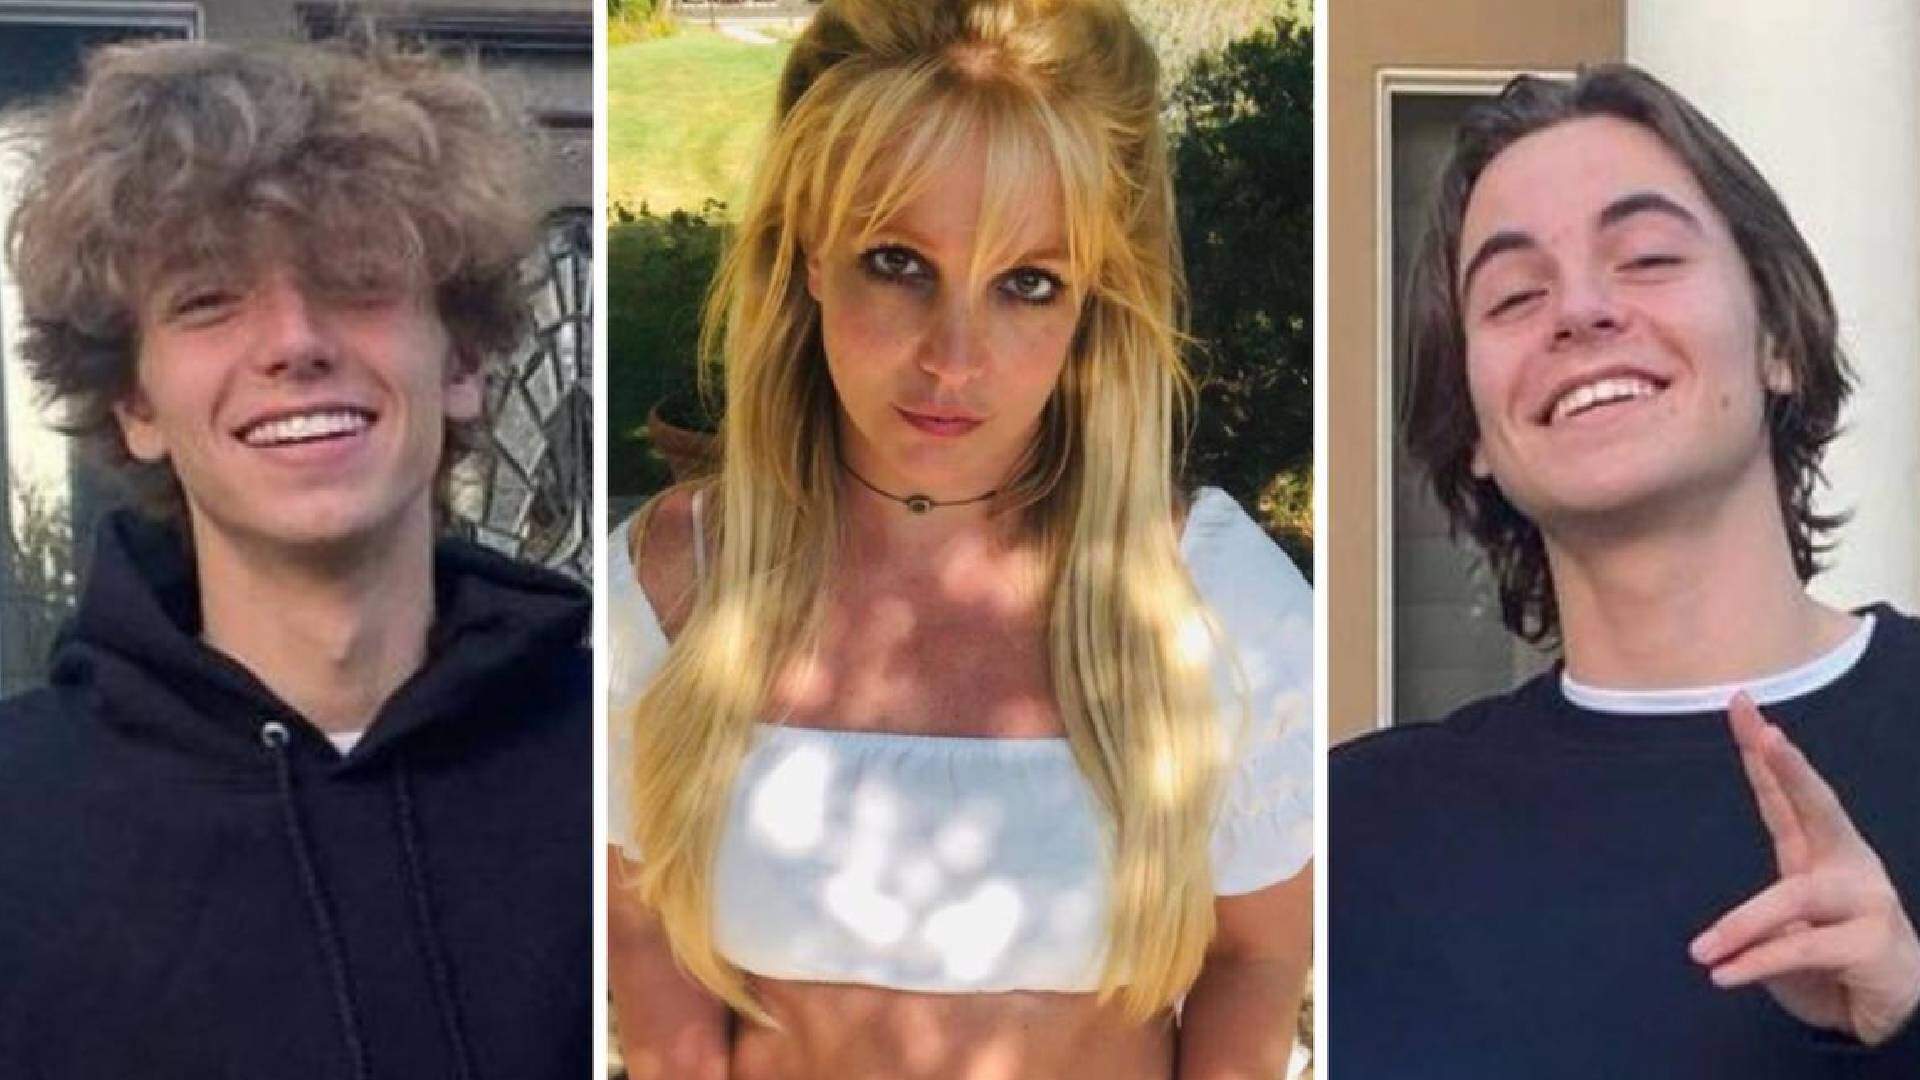 Brigados? Filhos de Britney Spears tomam atitude polêmica com a própria mãe e detalhe triste vem à tona - Metropolitana FM